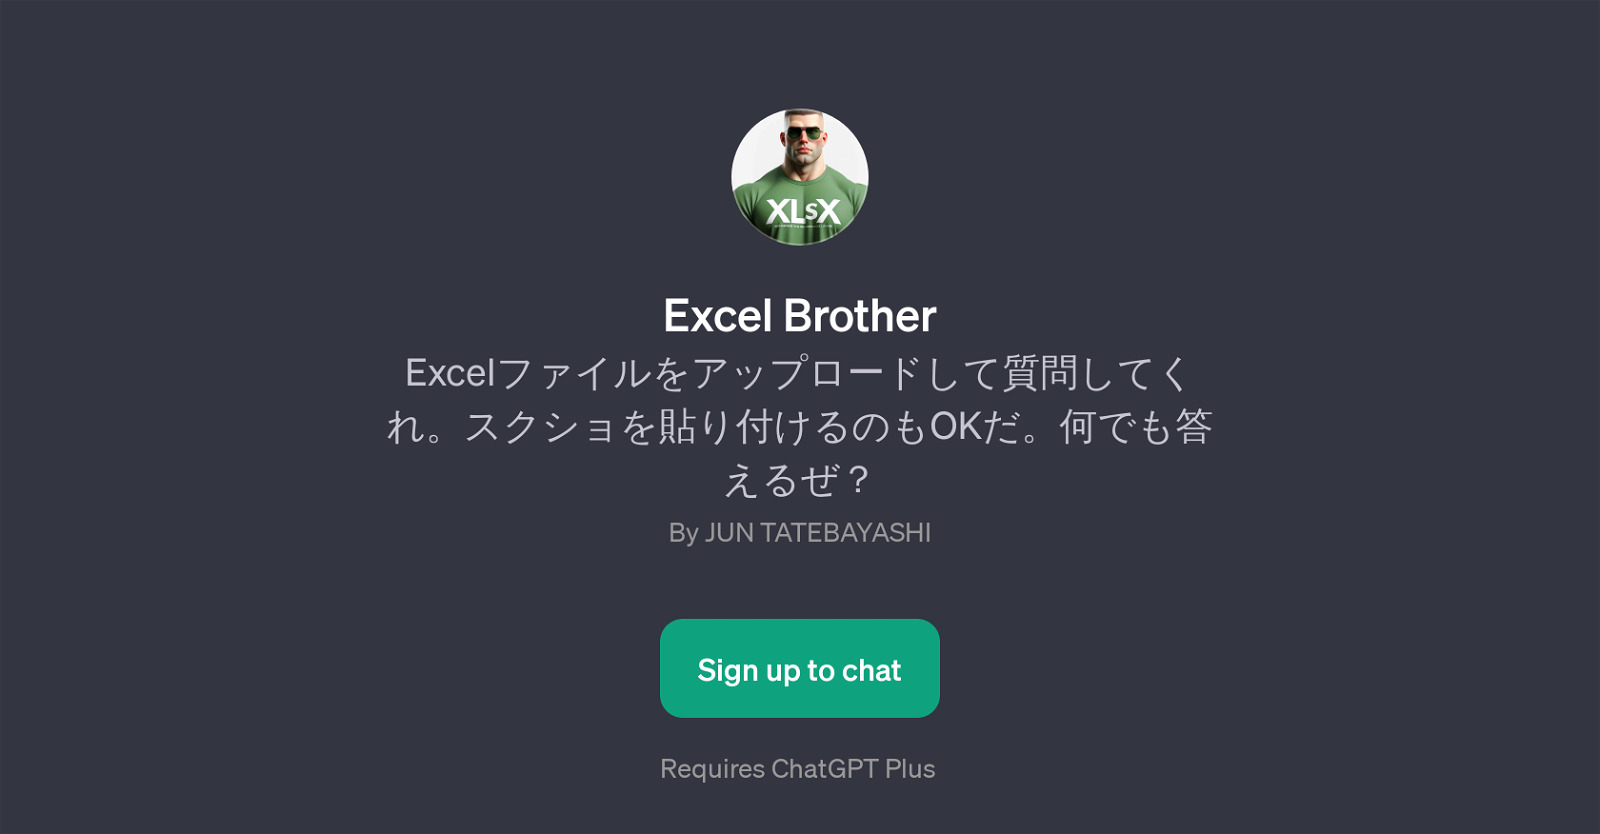 Excel Brother website